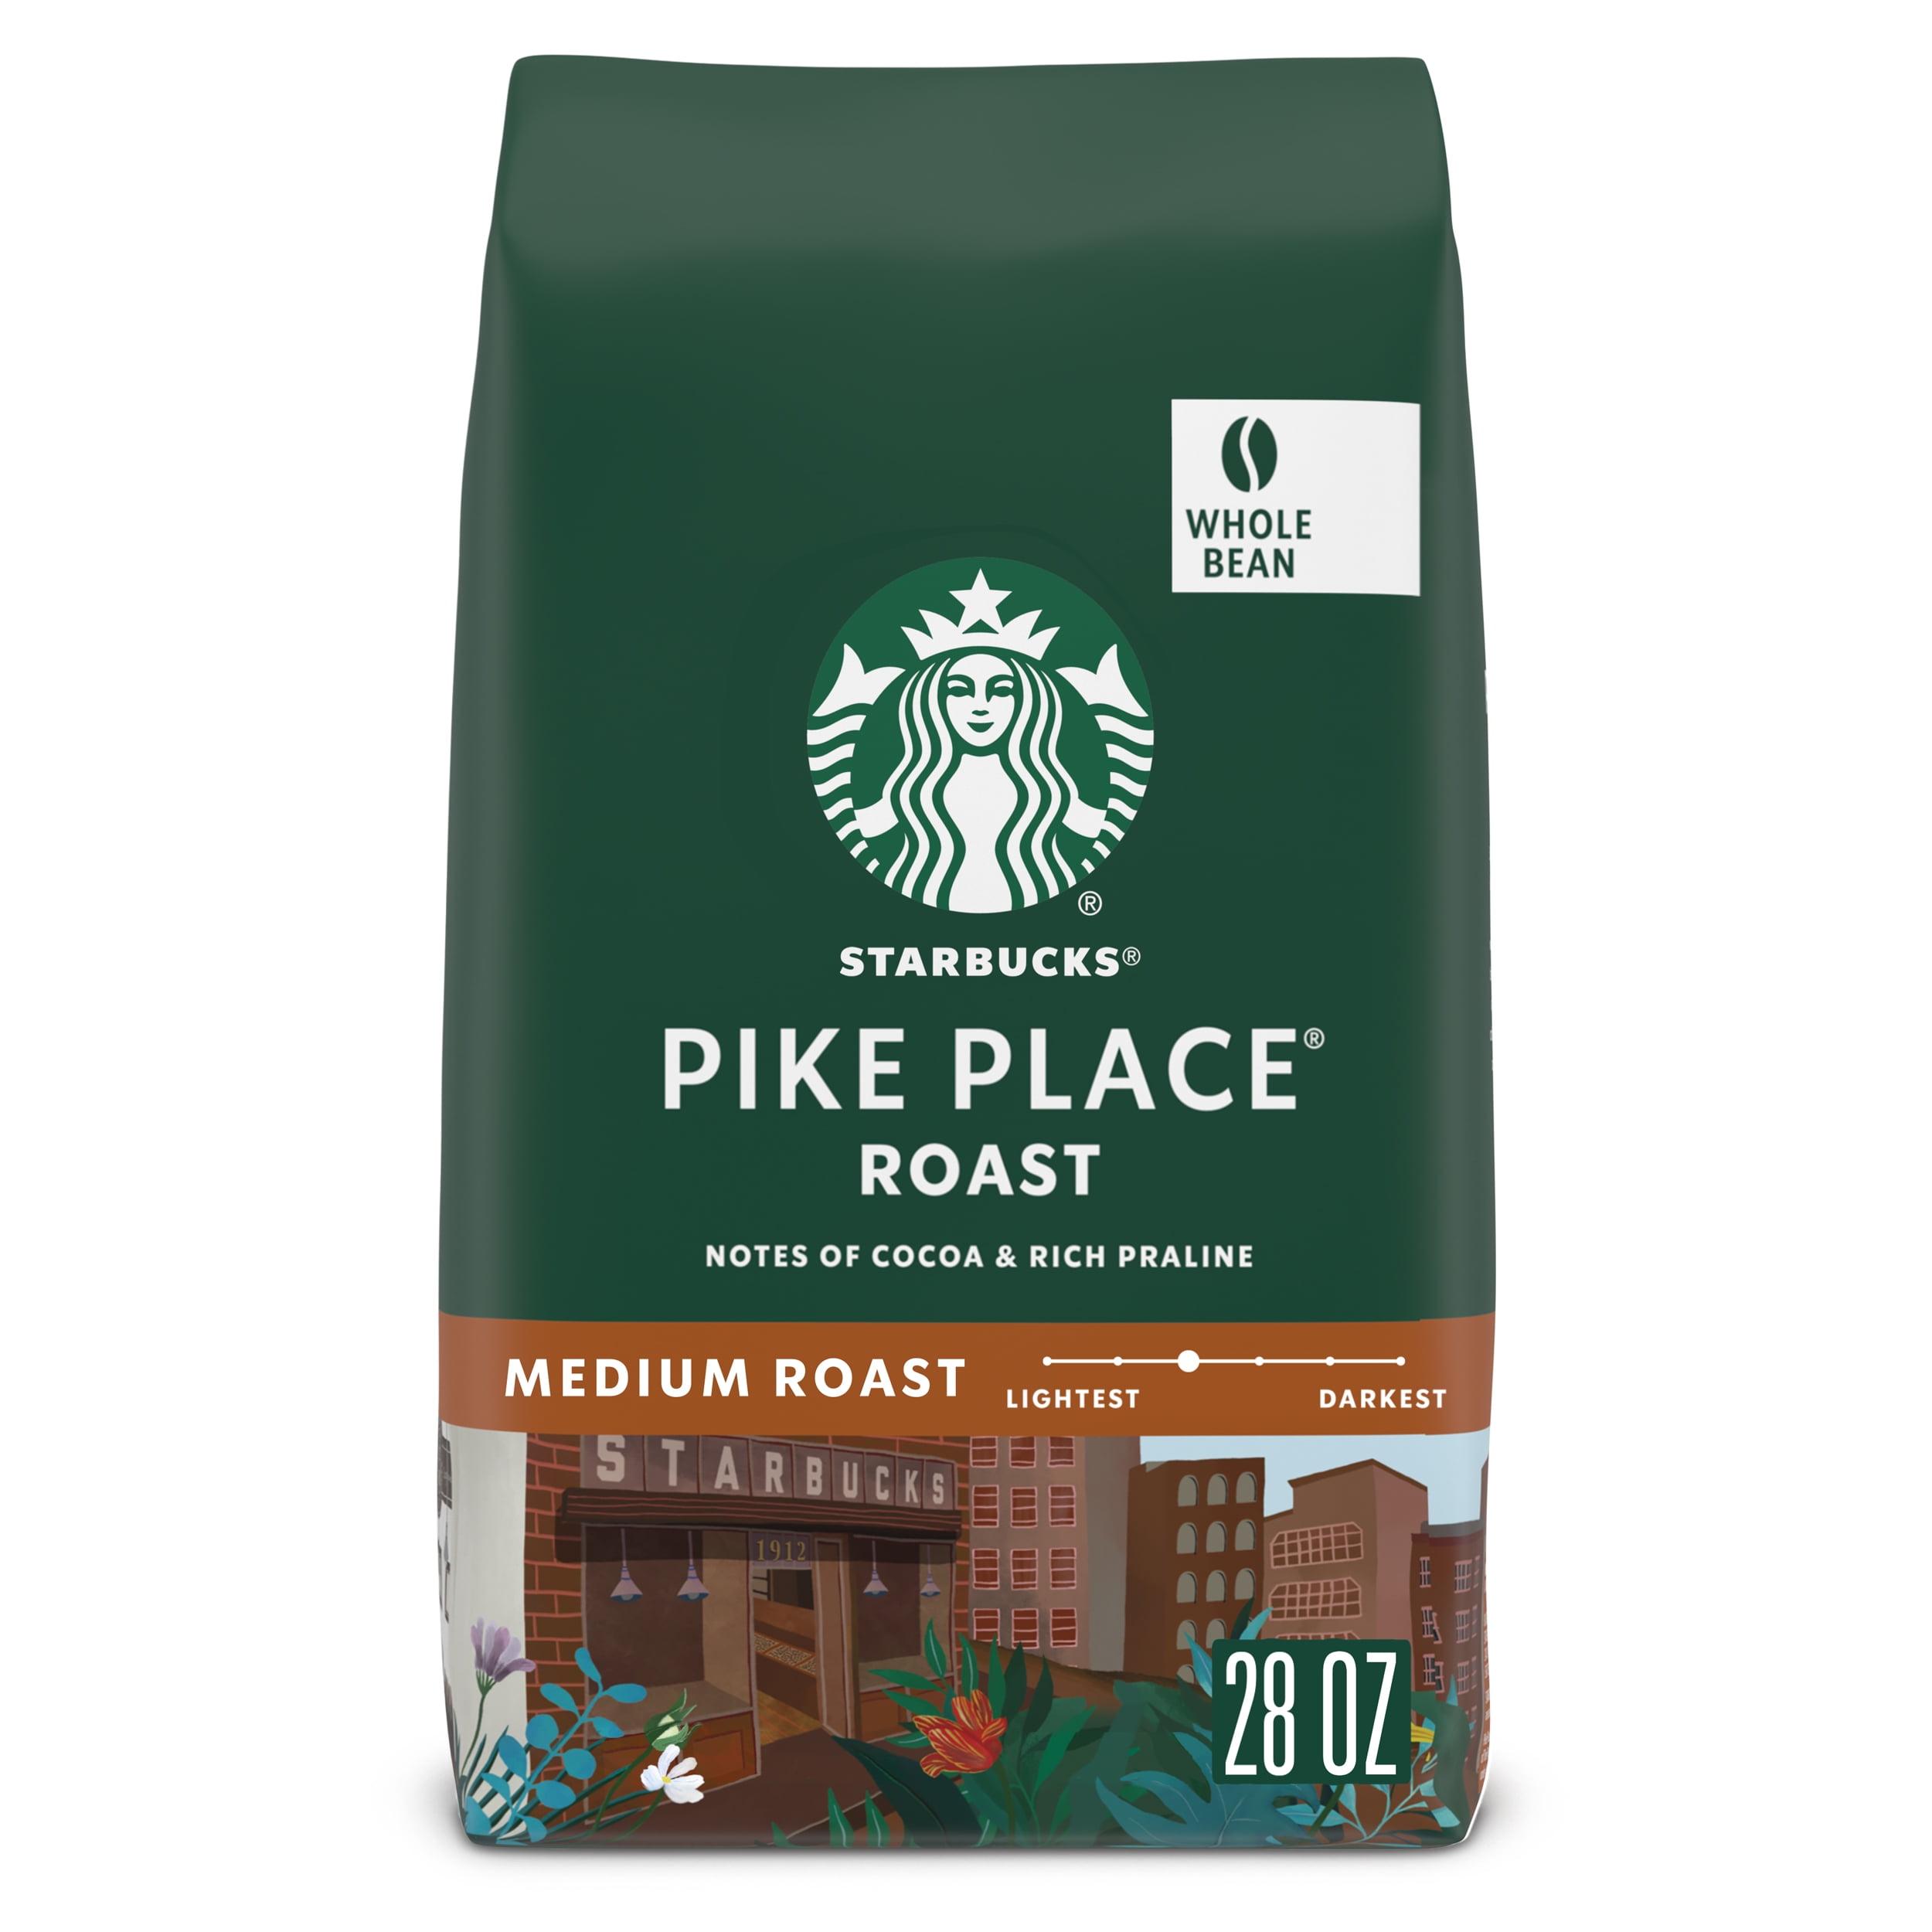 Starbucks Pike Place Roast, Whole Bean Coffee, Medium Roast, 28 oz